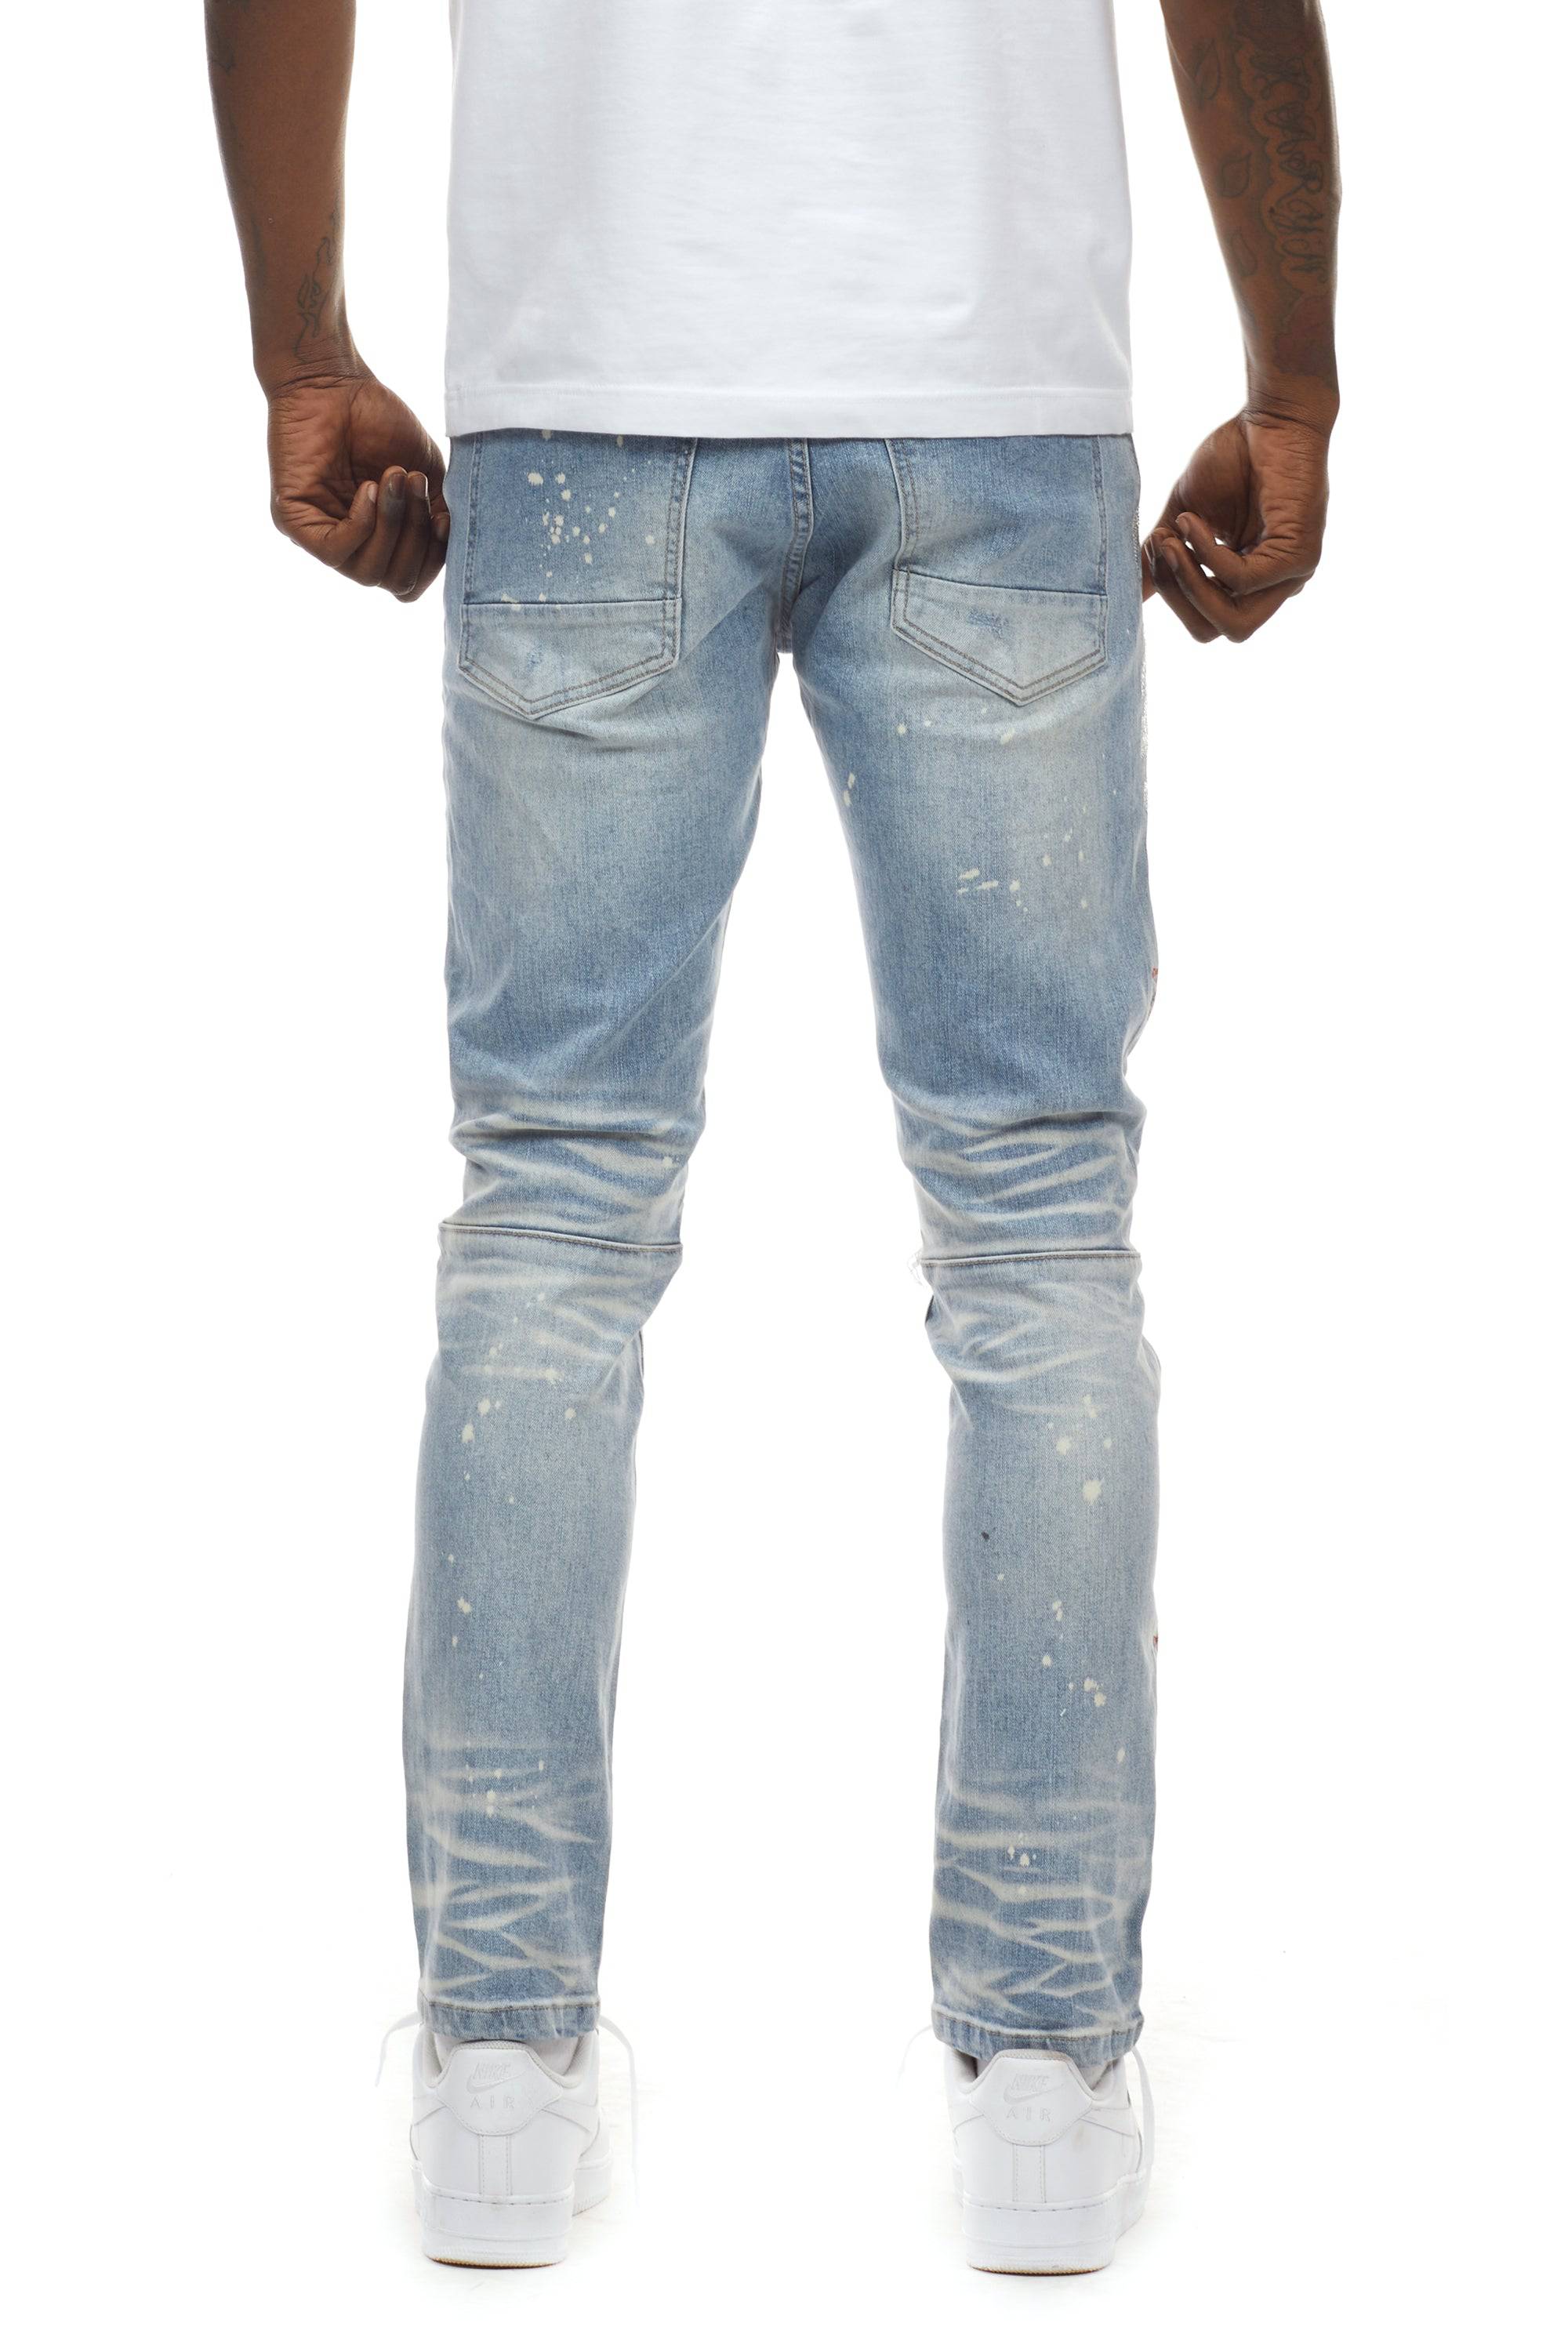 Flame Fashion Jeans - Preston Blue - Smoke Rise